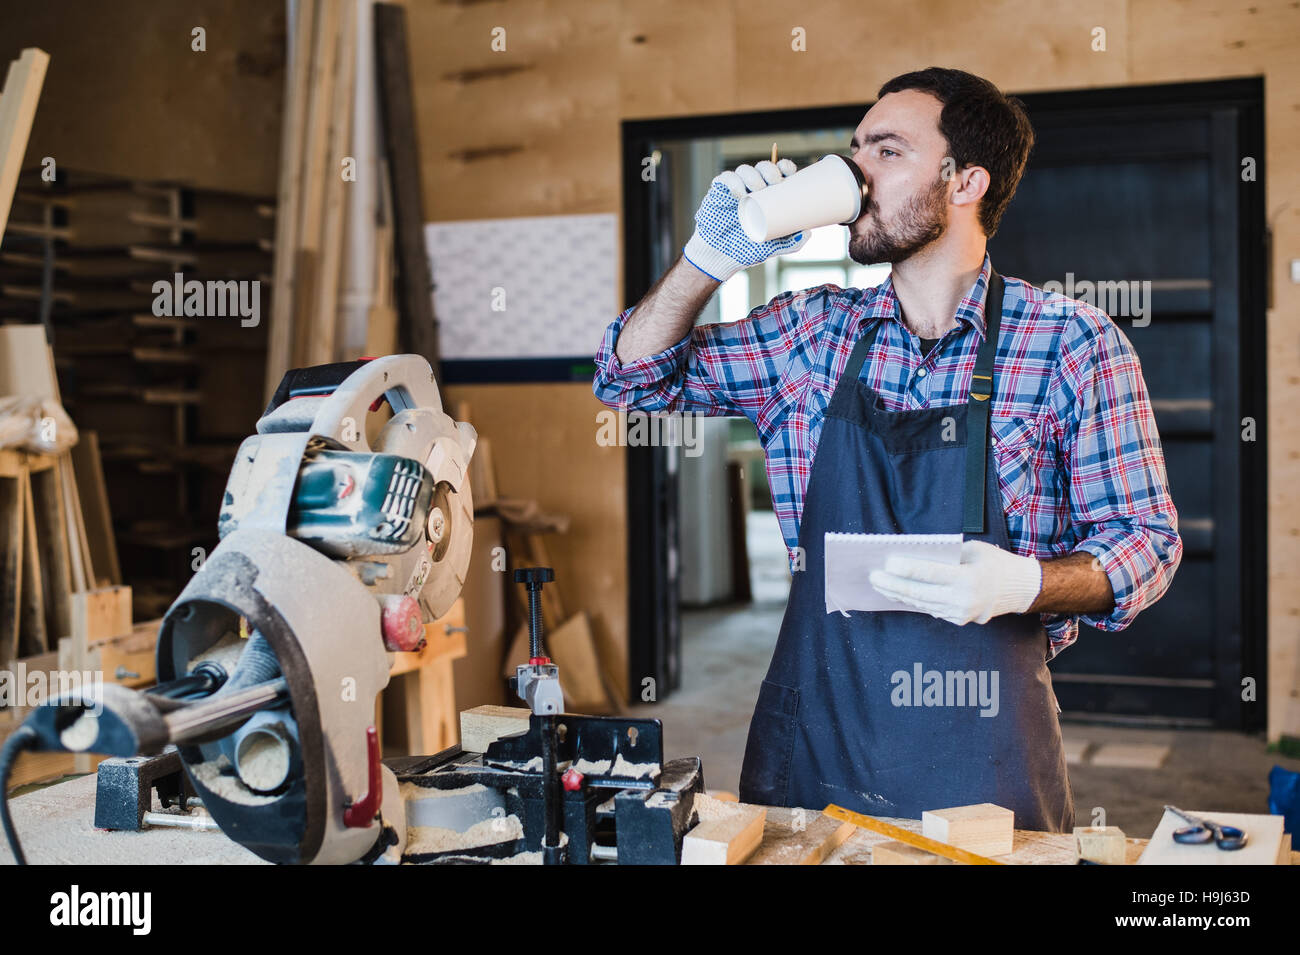 Carpenter en prenant une pause-café holding notebook en face de scie circulaire dans son atelier Banque D'Images